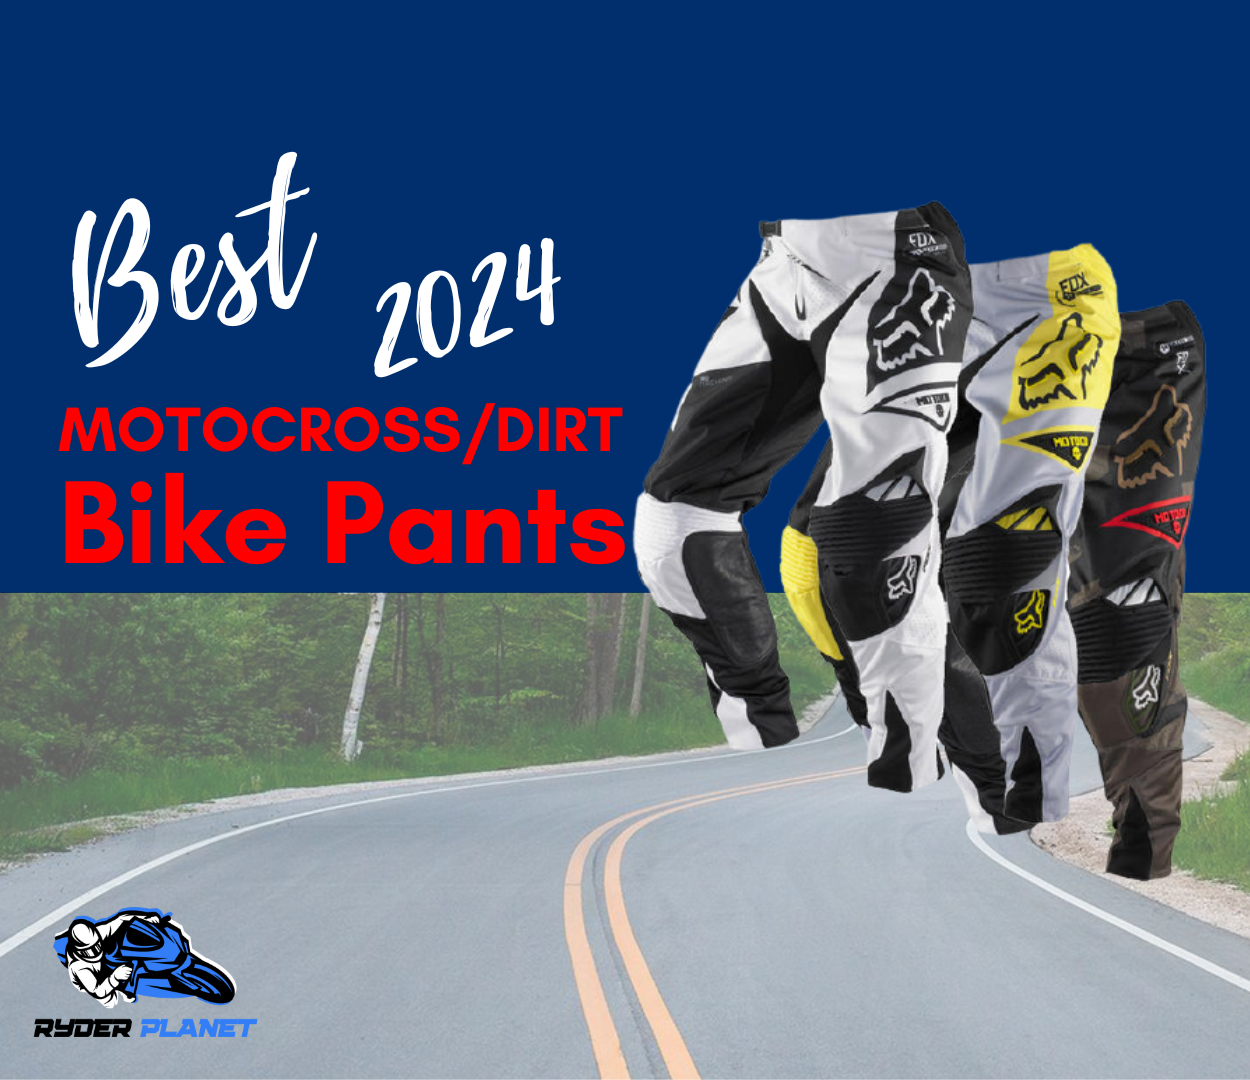 Best Motocross/dirt Bike Pants